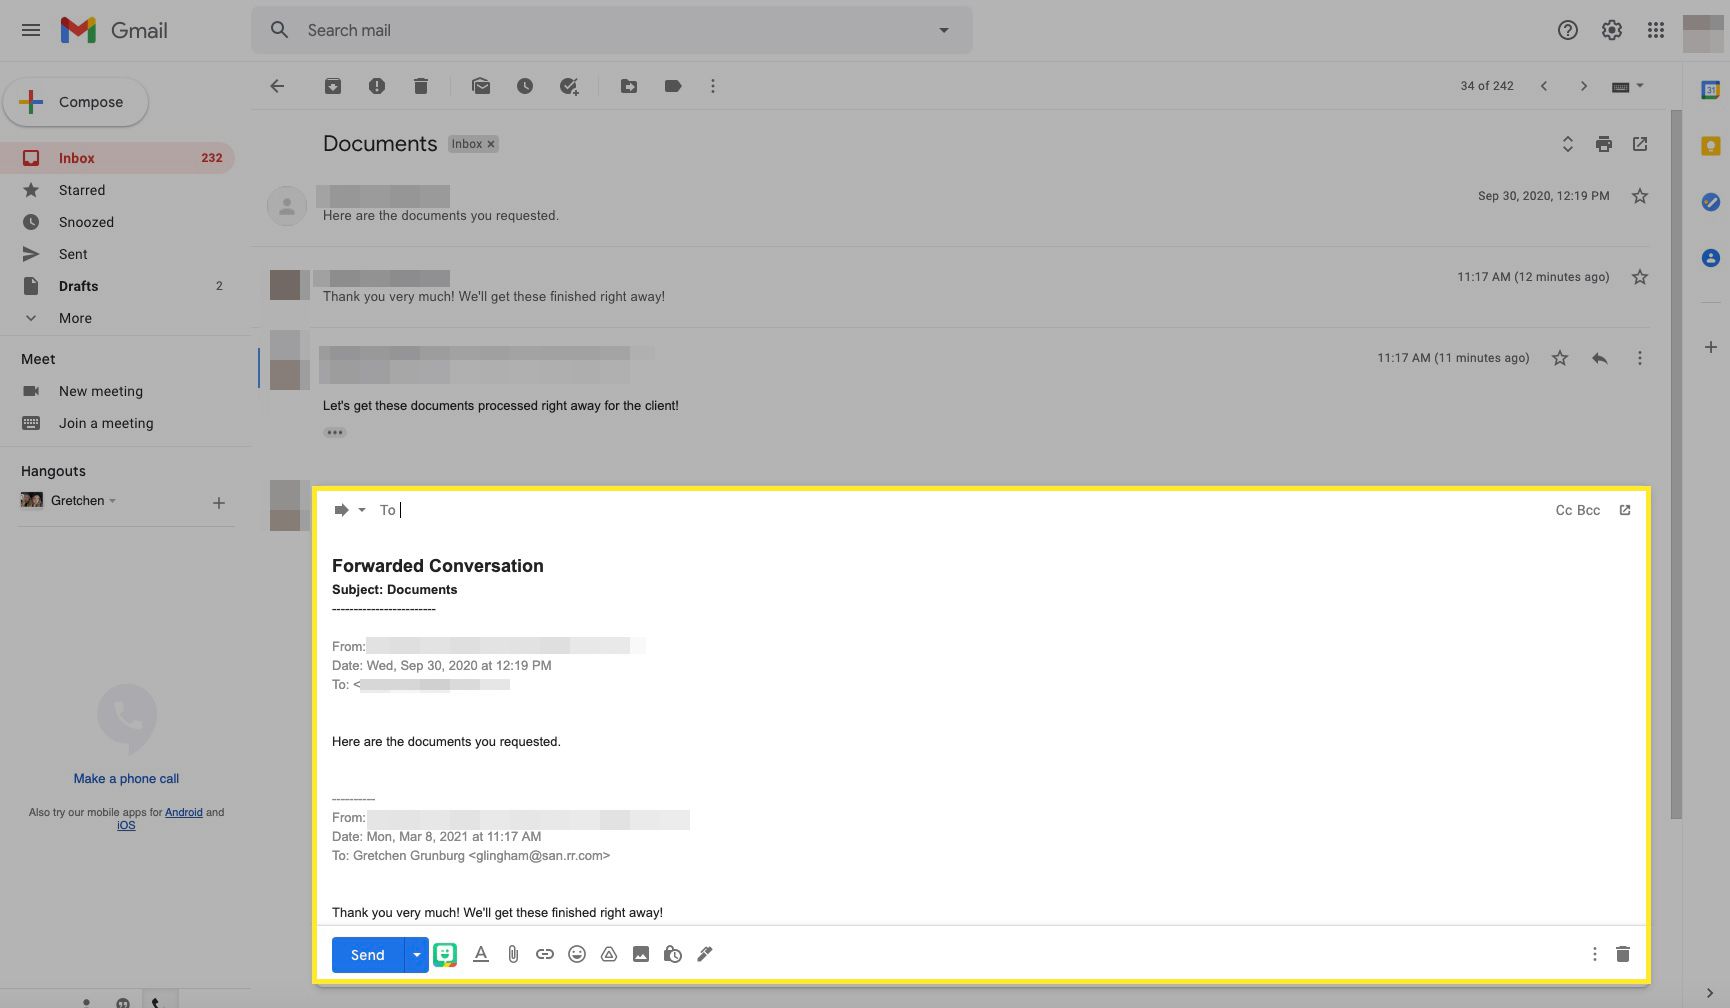 Gmail-e-posttråd vidarebefordras med vidarebefordrad konversation markerad